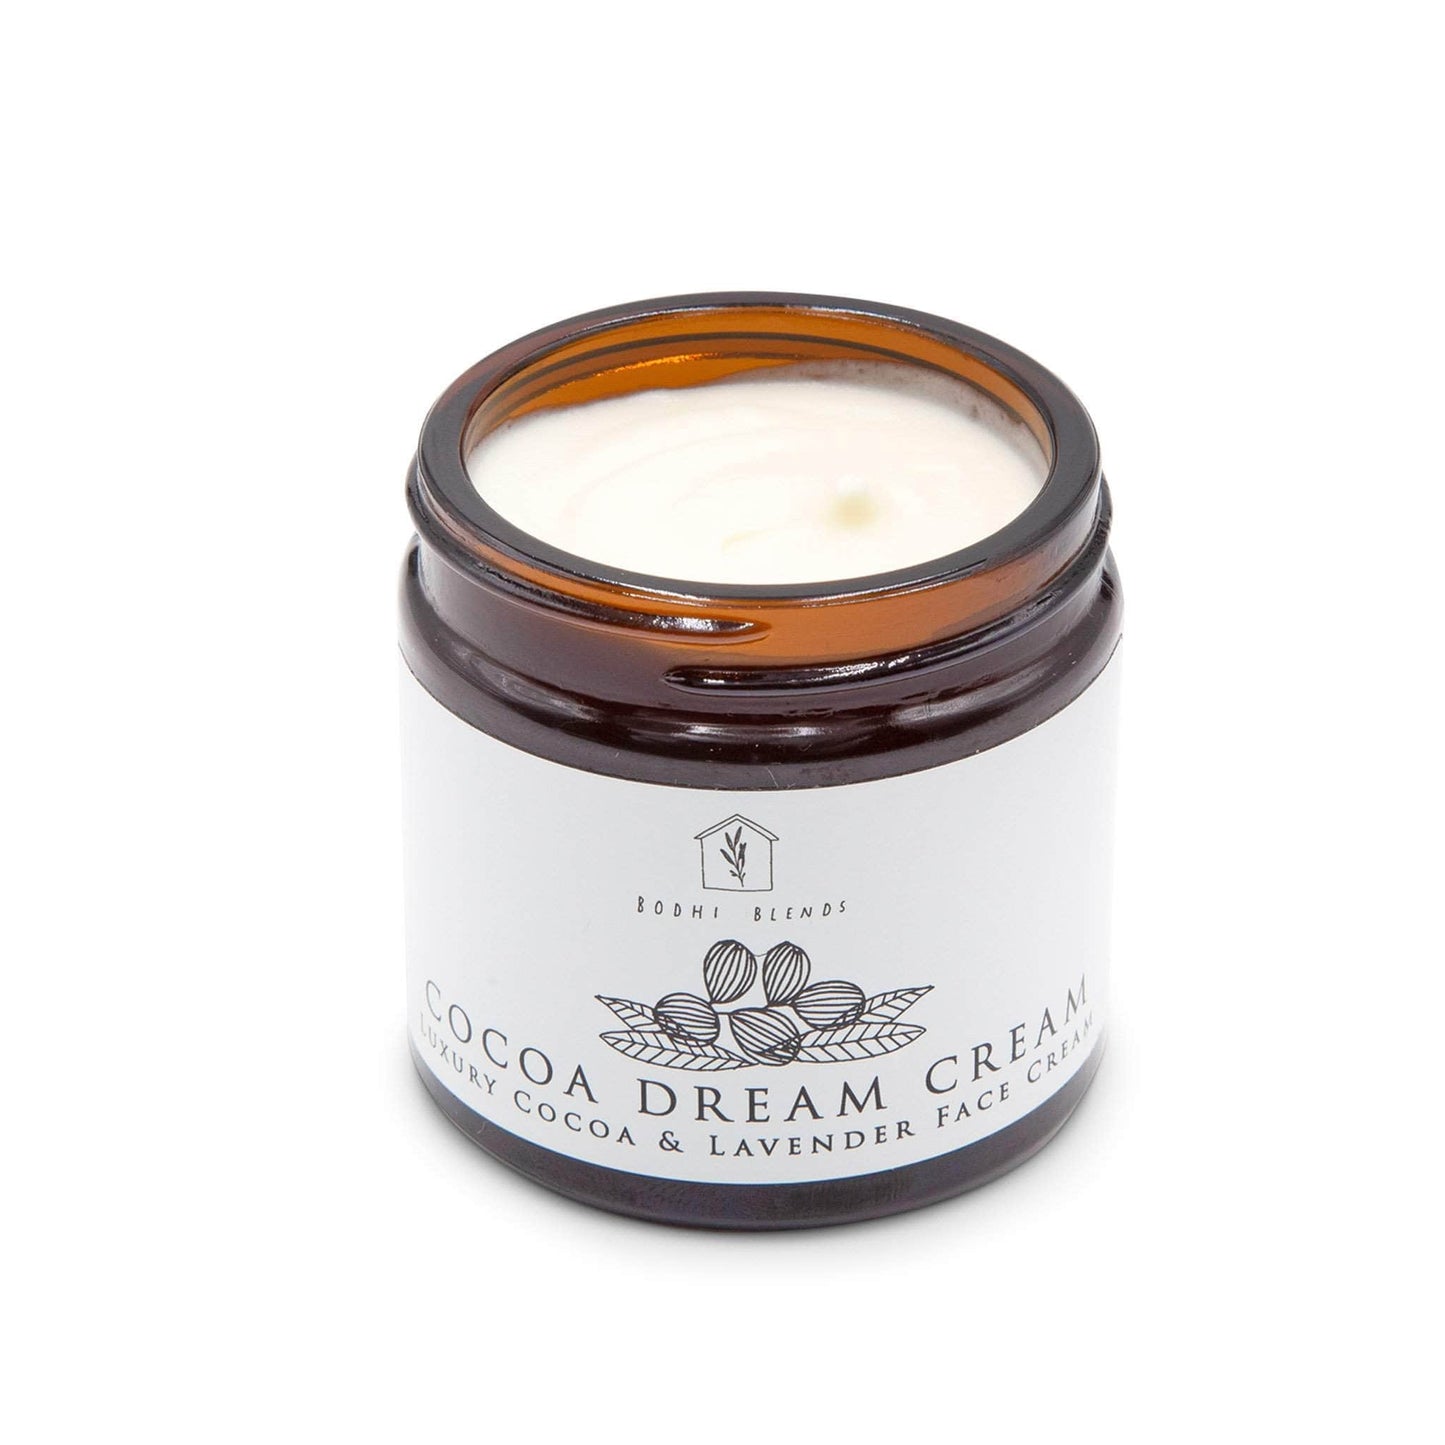 Bodhi Blends Skincare Bodhi Blends Cocoa Dream Cream Cocoa & Lavender Luxury Face Cream- 60ml